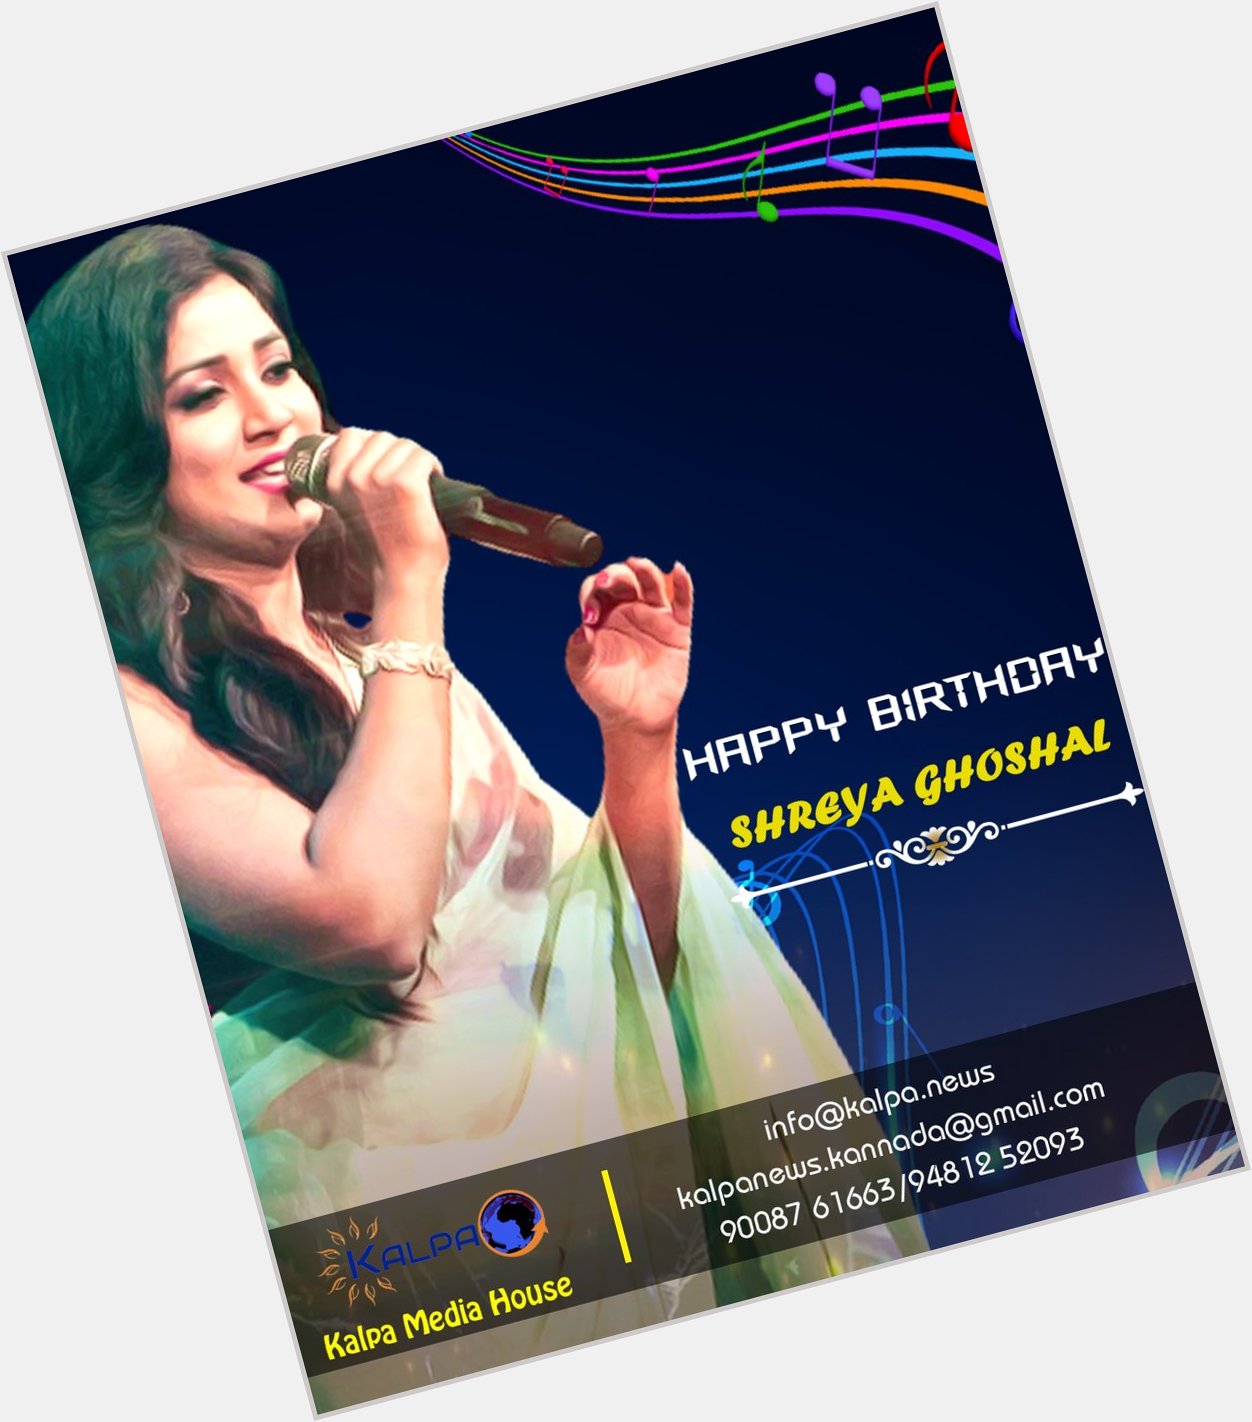 Happy Birthday Shreya Ghoshal   